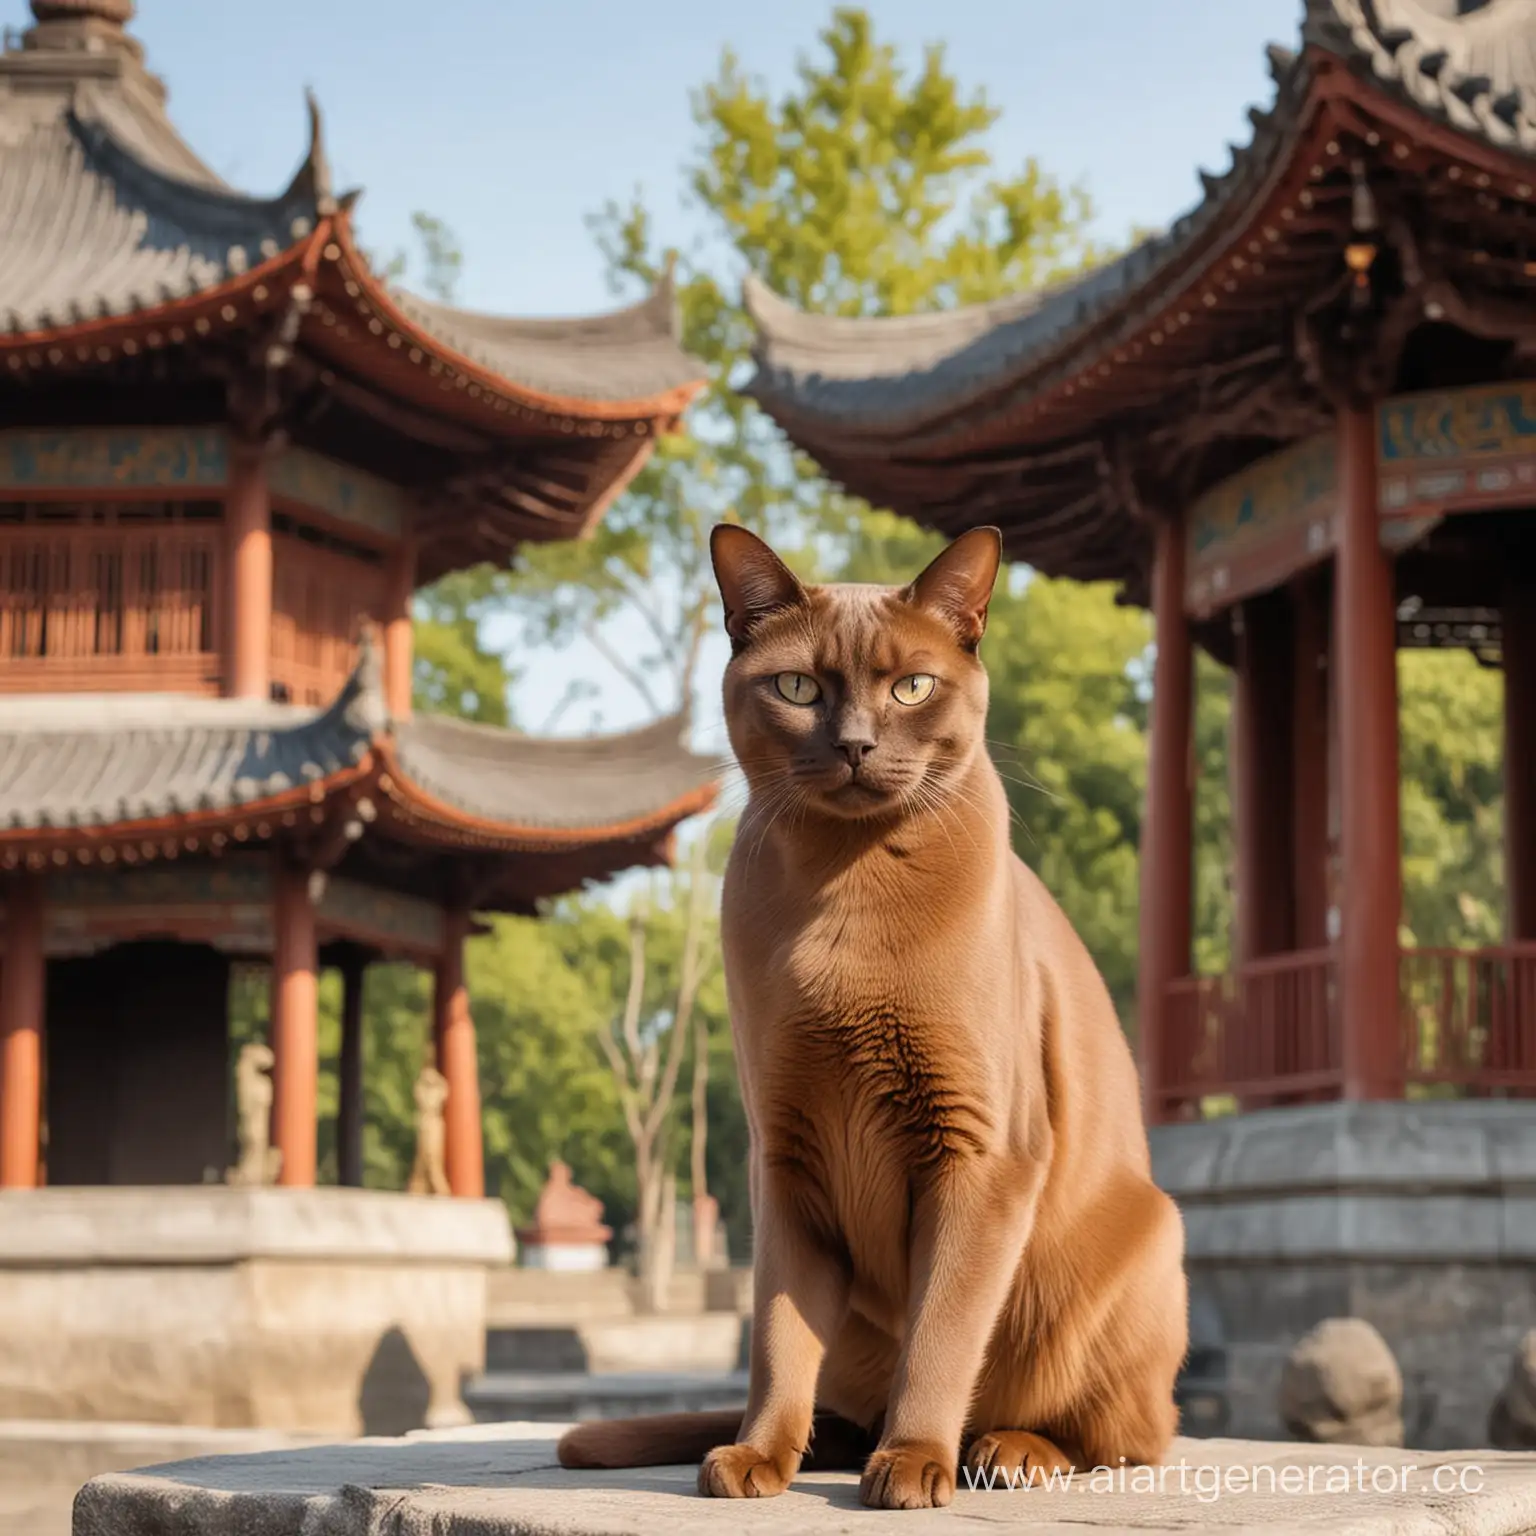 очень красивая кошка породы бурма коричневого окраса на фоне китайской пагоды